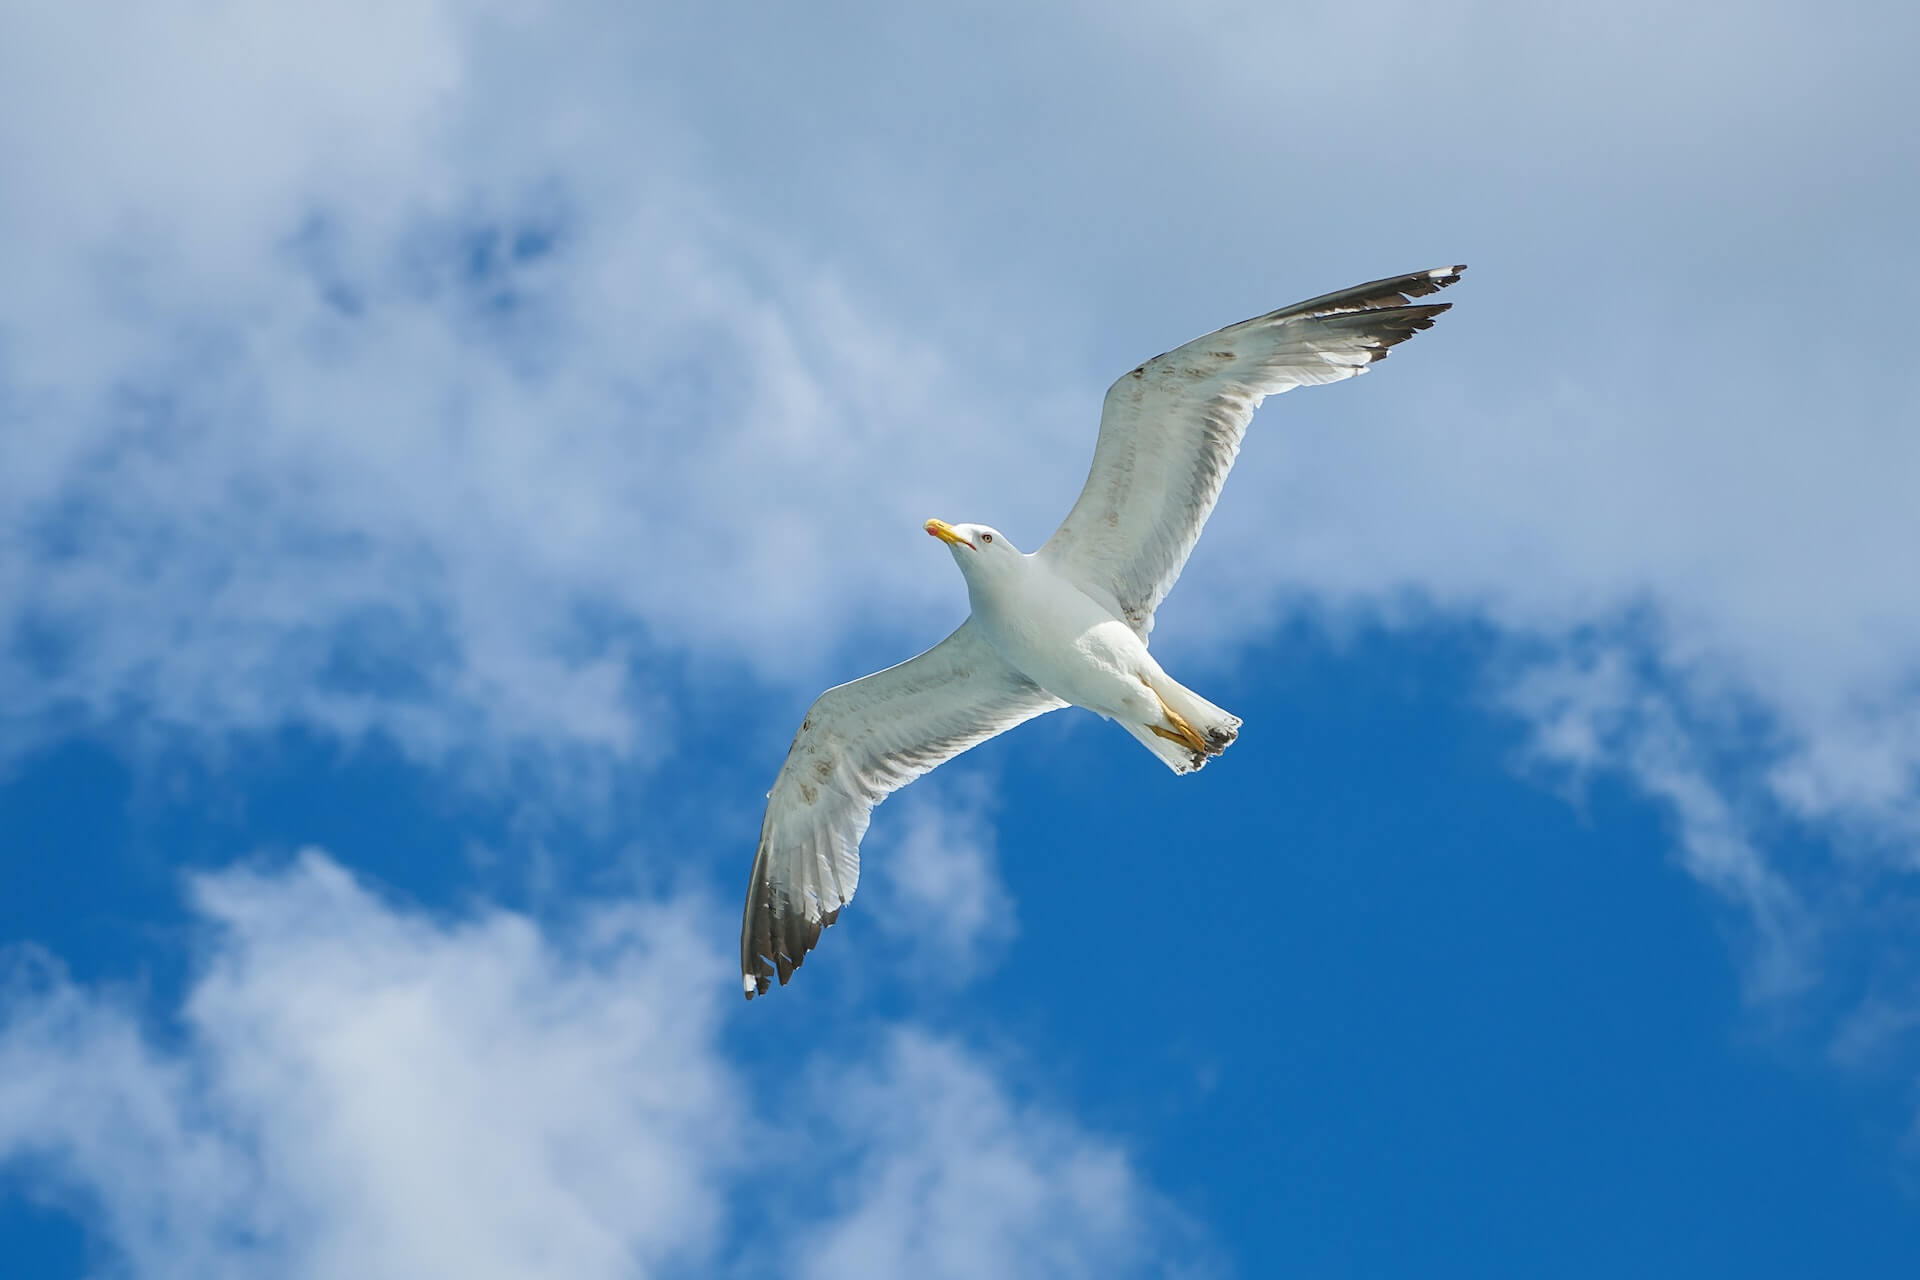 seagull soaring through the air